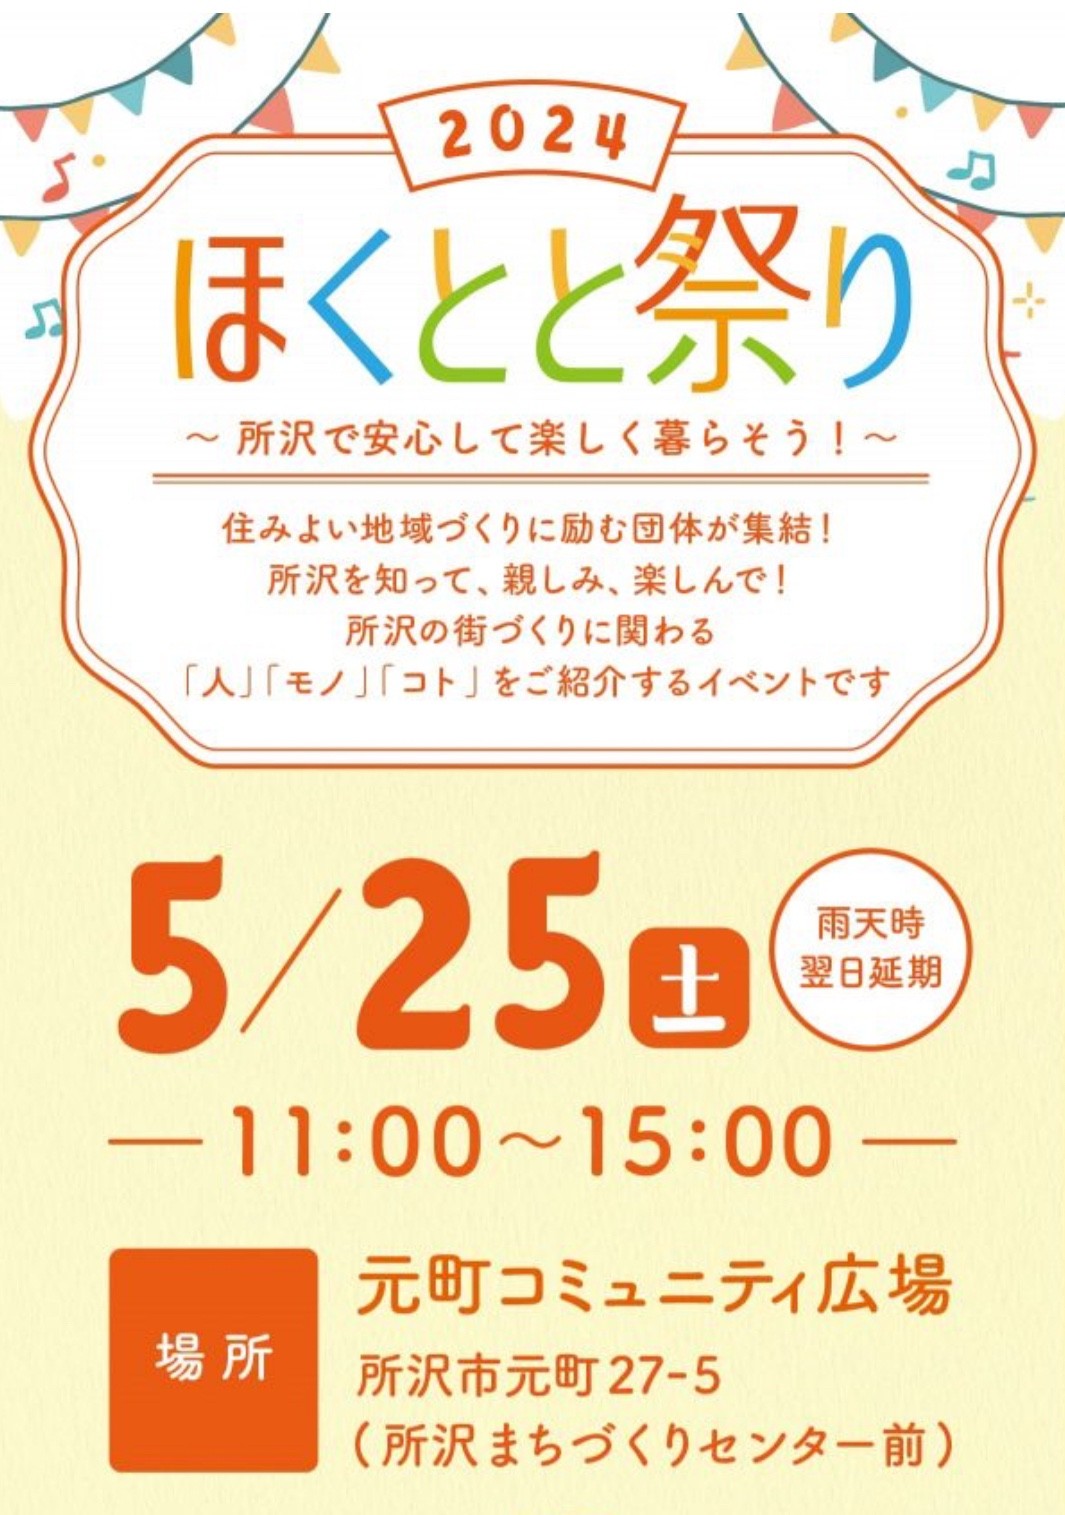 【元町】北斗不動産ホールディングス主催「ほくとと祭り」